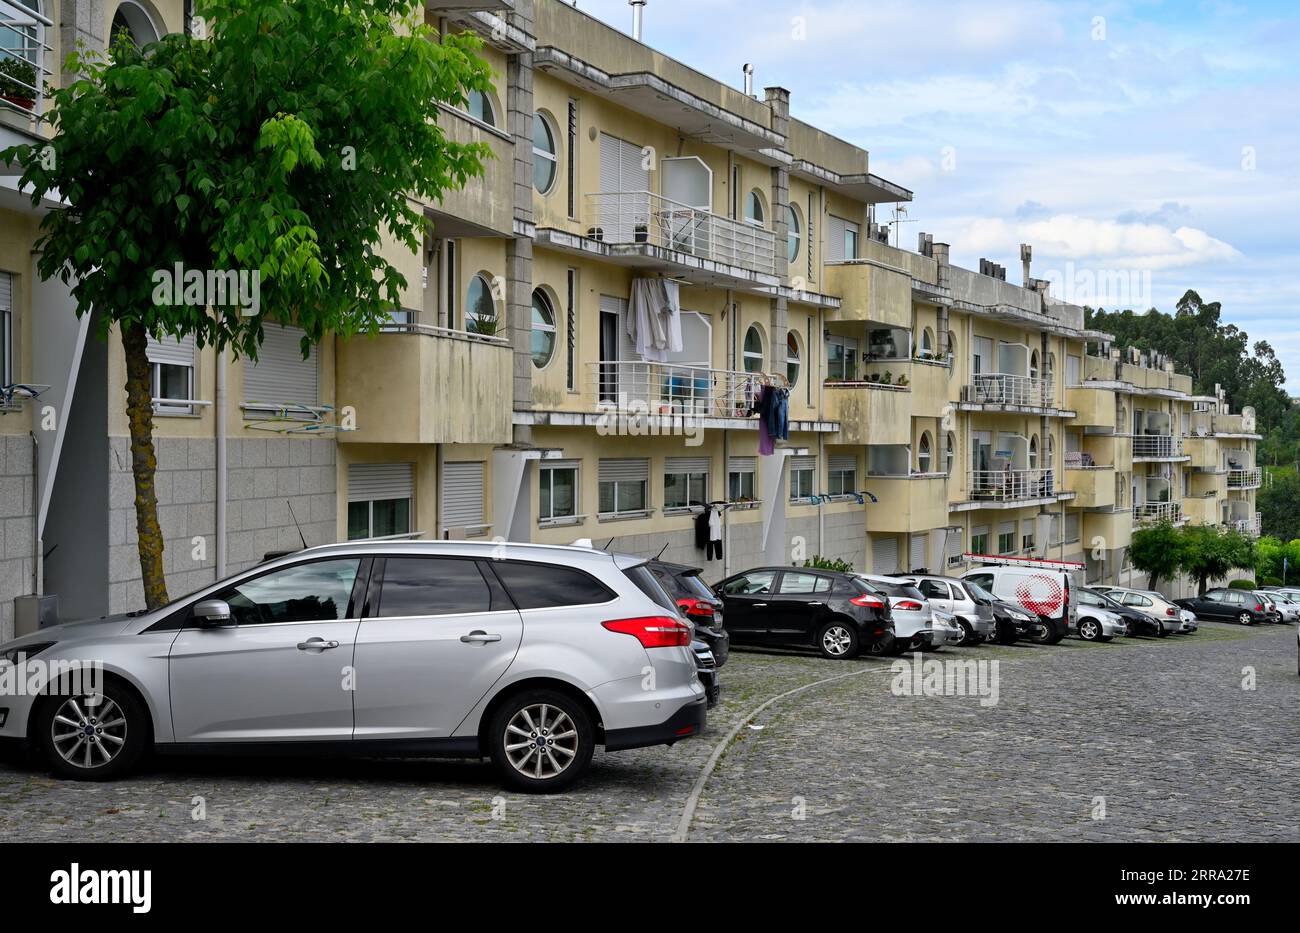 Terrasse rangée d'appartements avec balcons et voitures garées à l'extérieur, Agrola, Portugal Banque D'Images